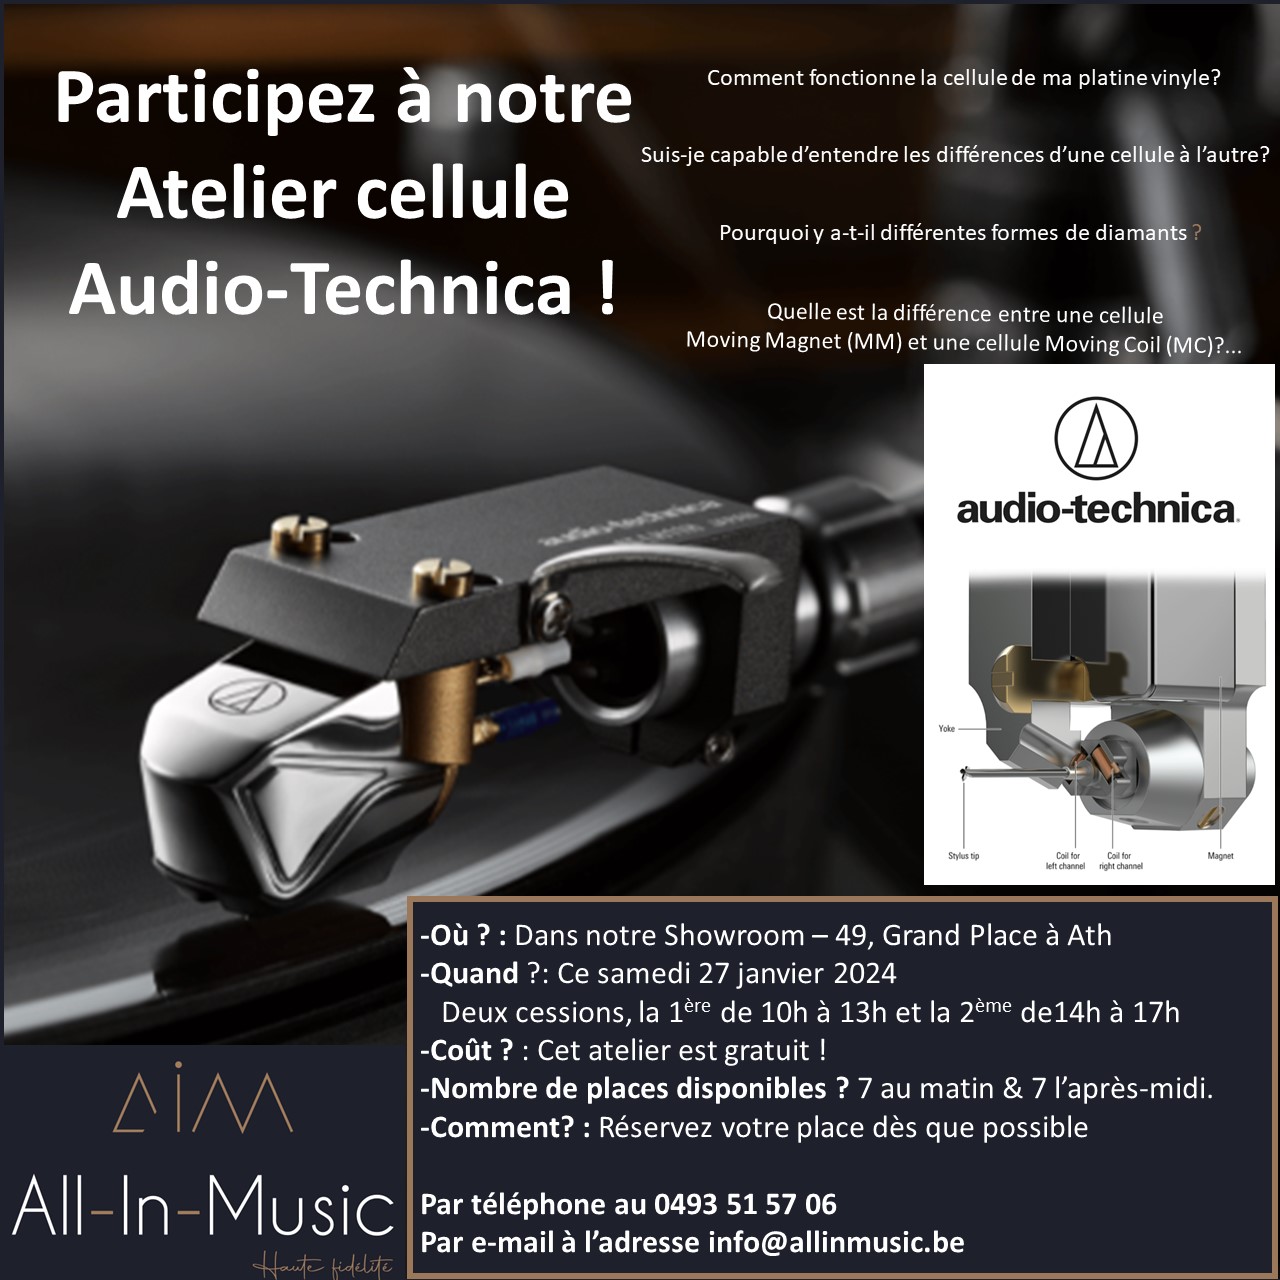 All-In-Music Audio-Technica